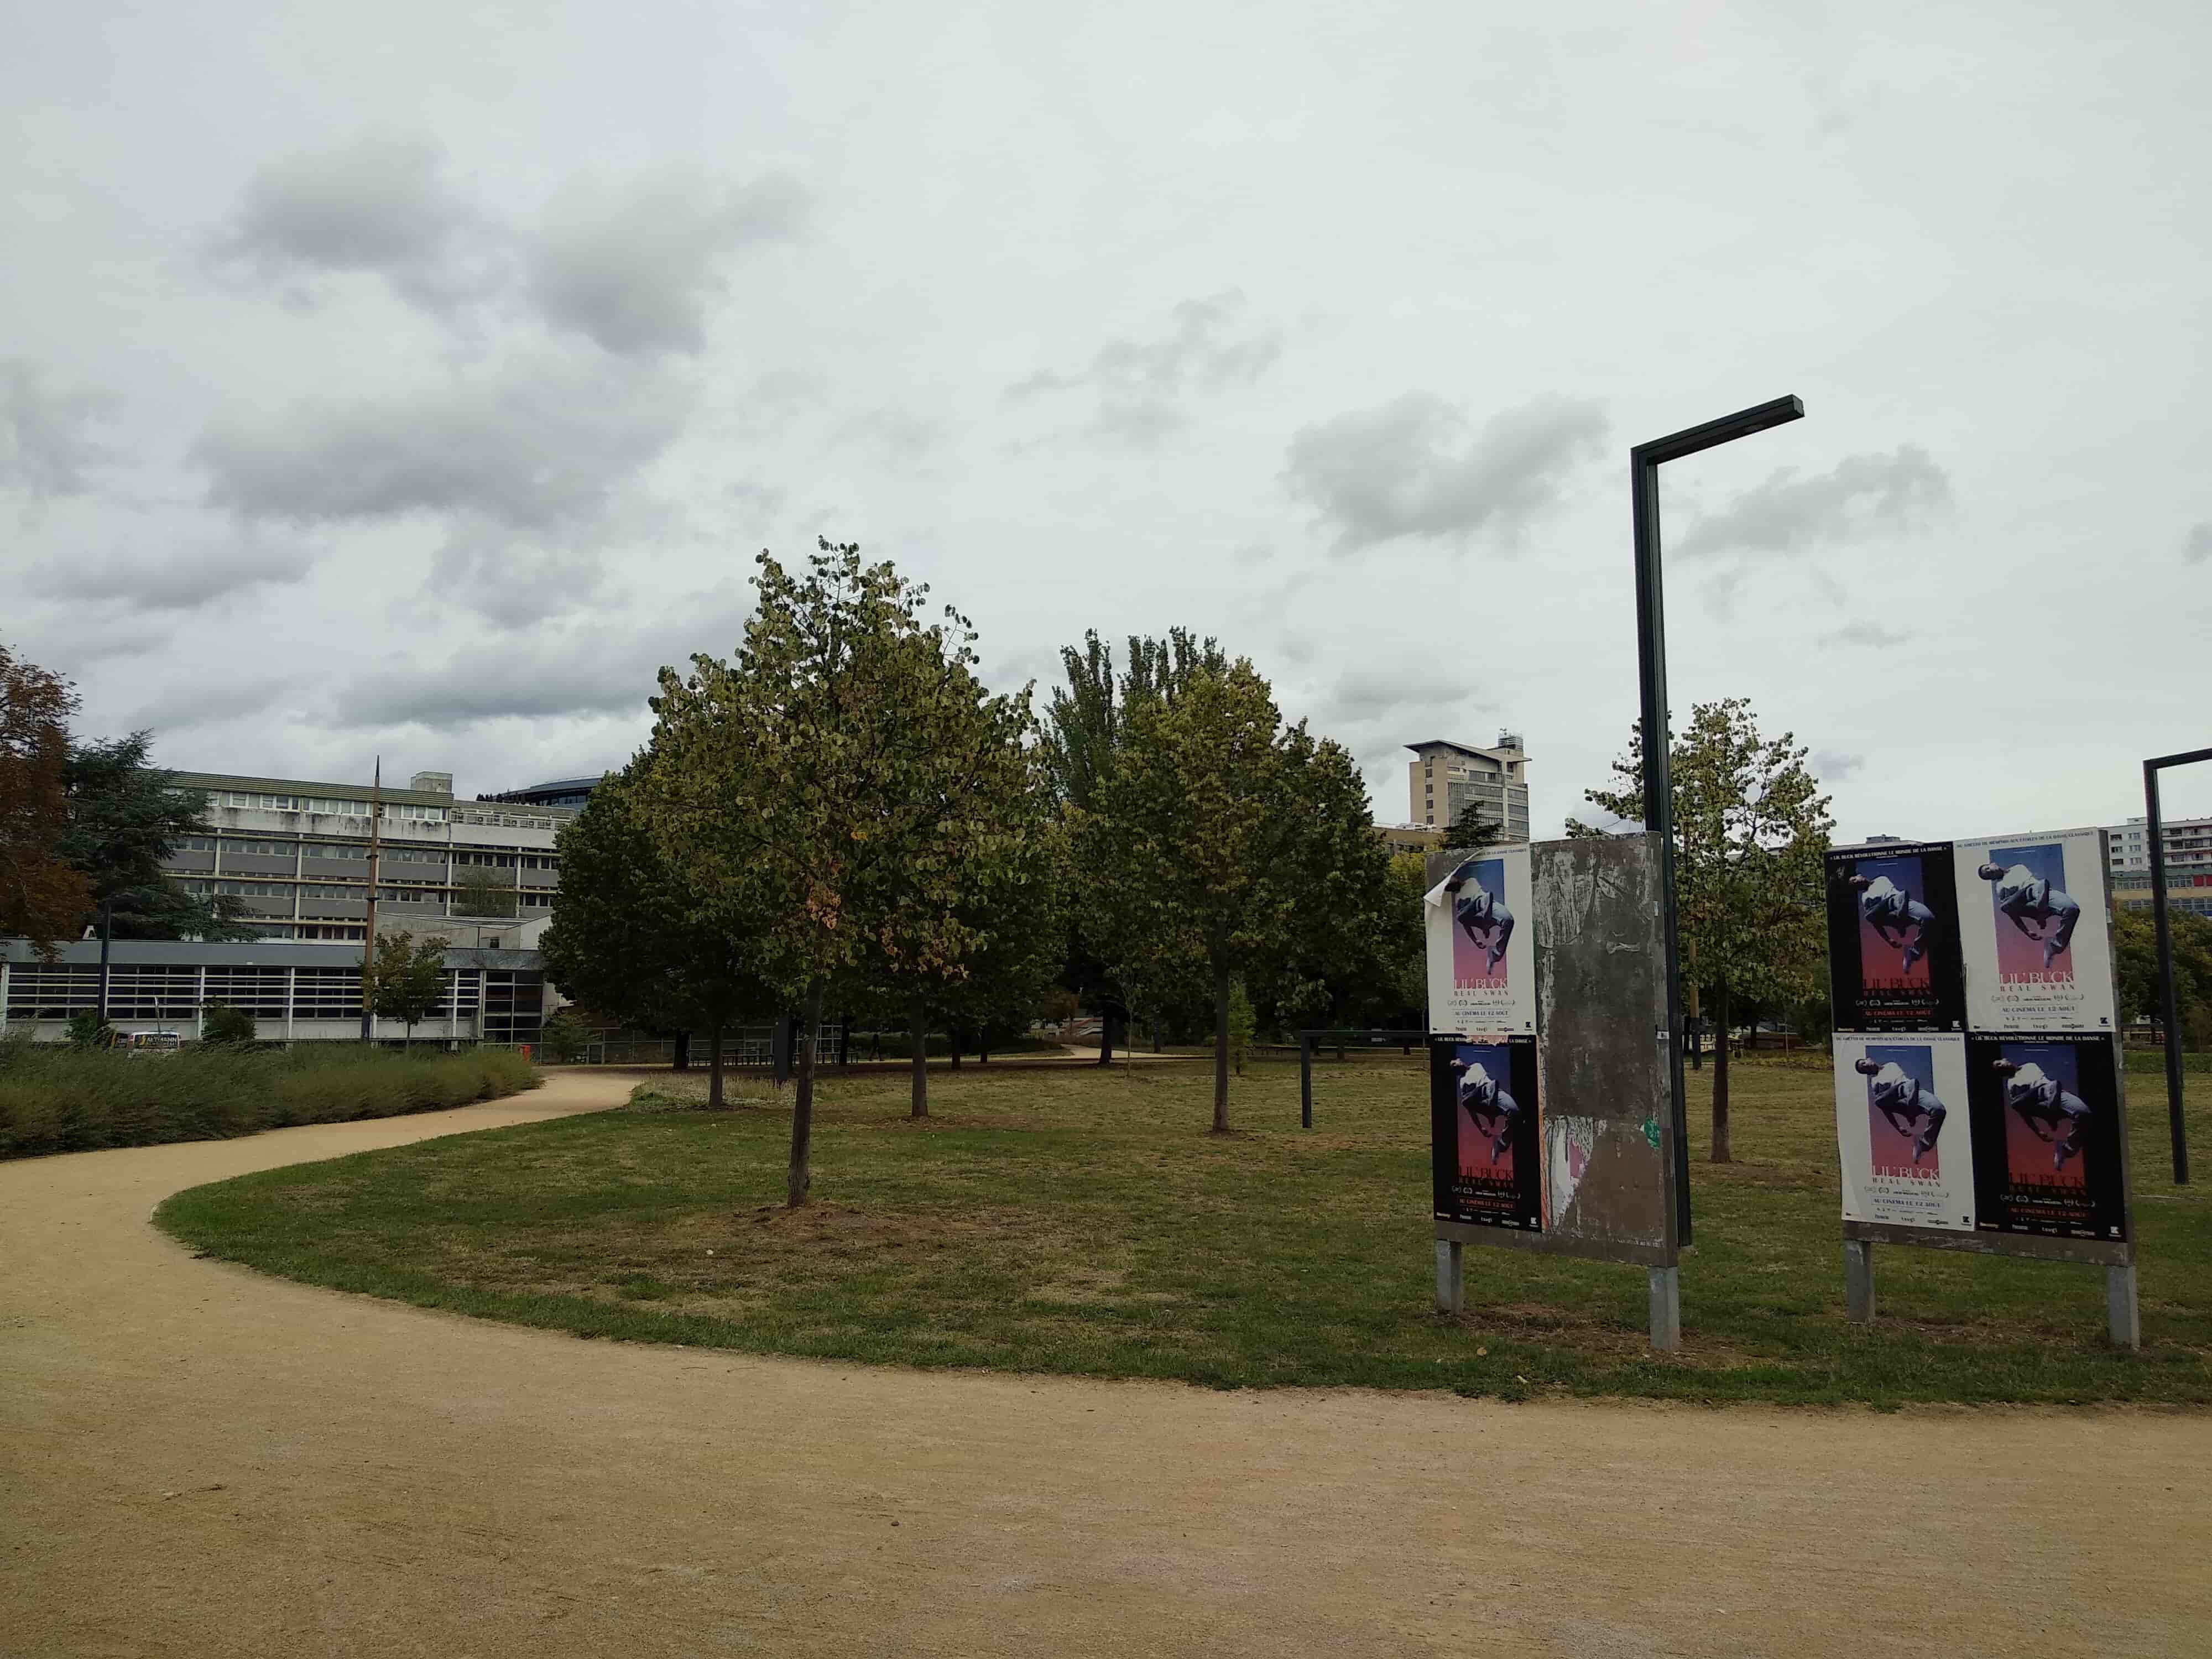 le campus vide de l'université de strasbourg, le ciel est nuageux